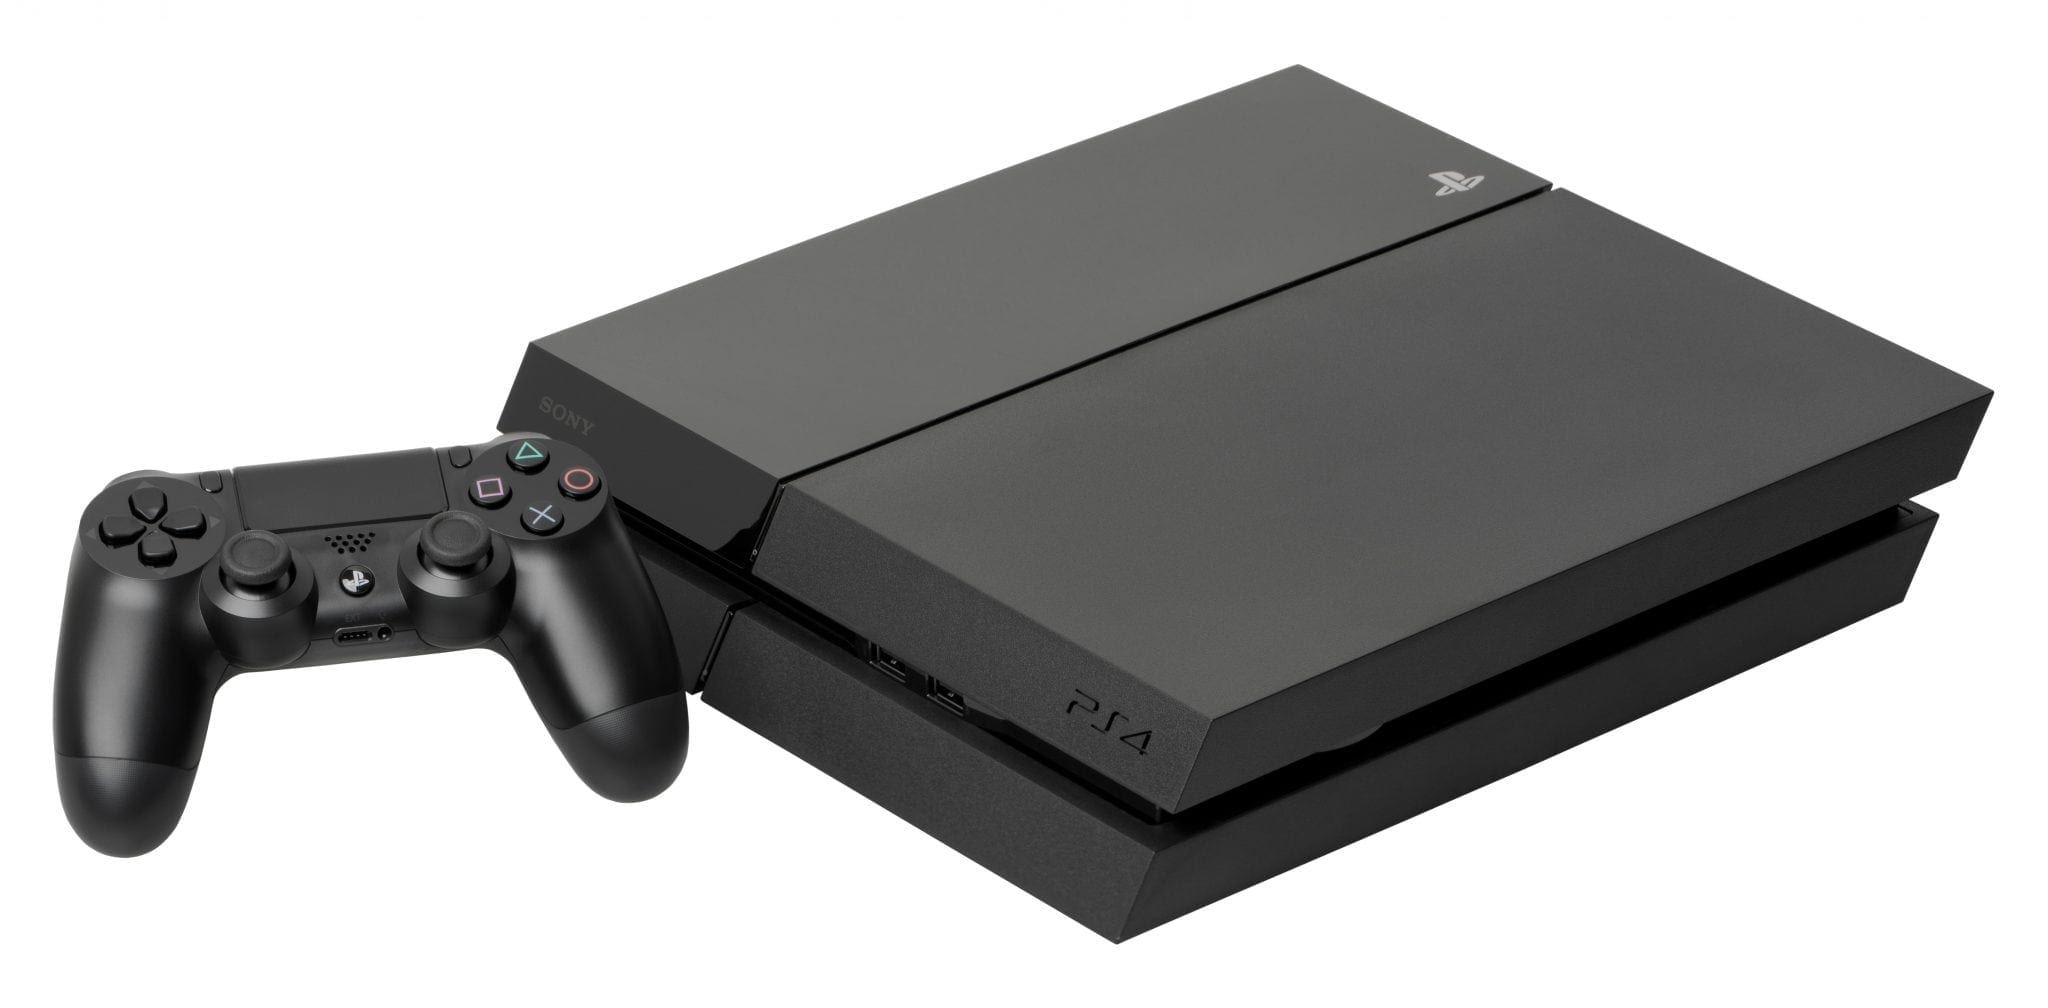 Consola Playstation 4 a fost vândută în peste 40 de milioane de unități